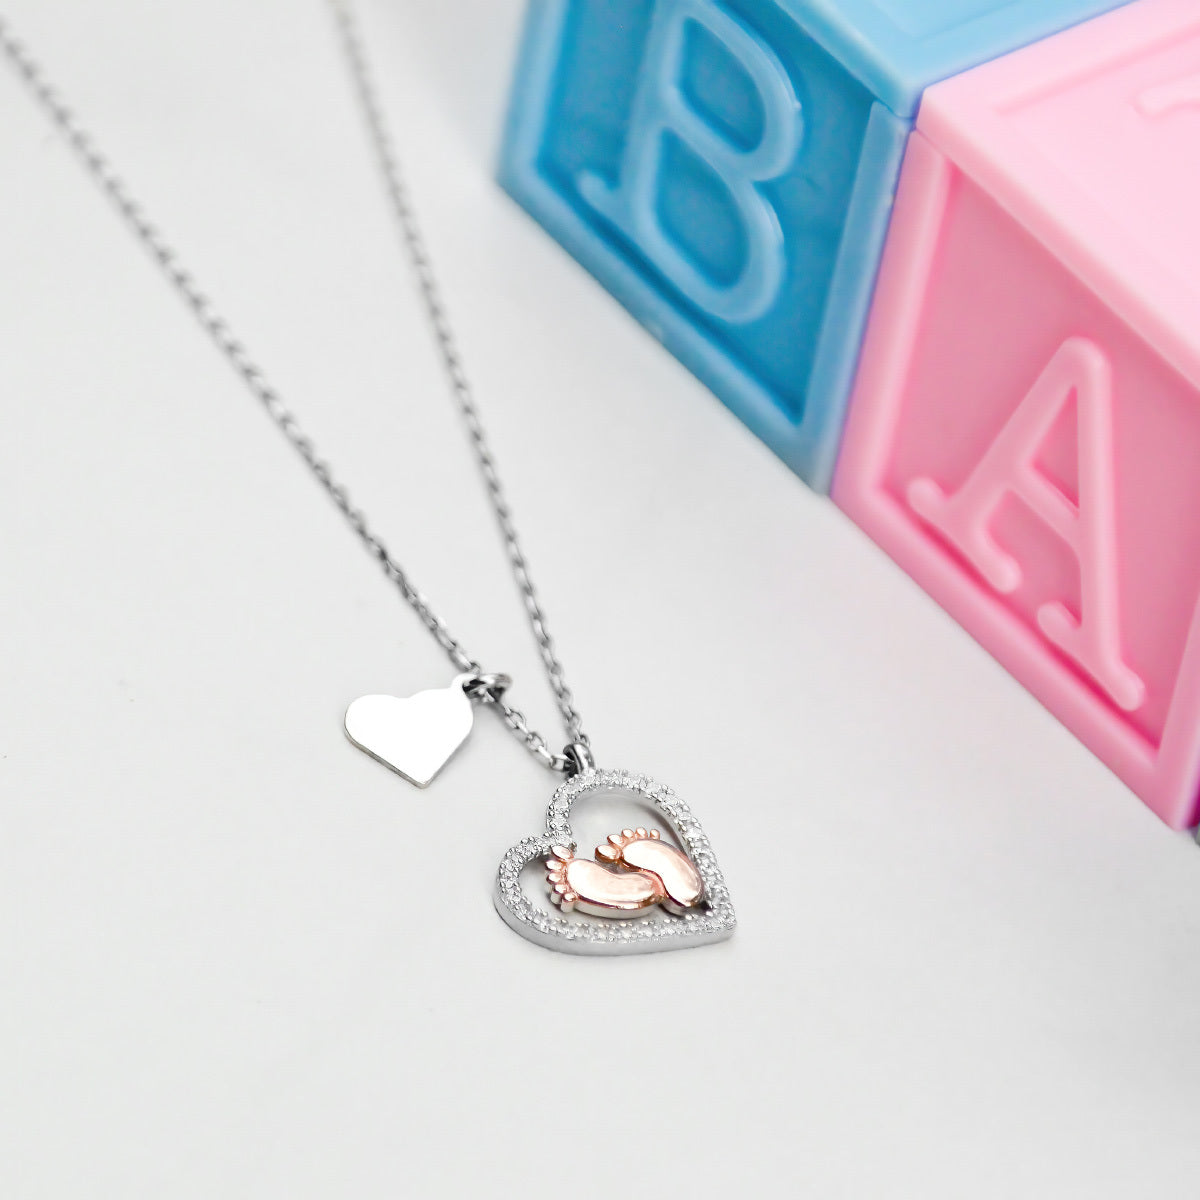 MOM Noun - Baby Feet Heart Pendant Necklace Gift Set